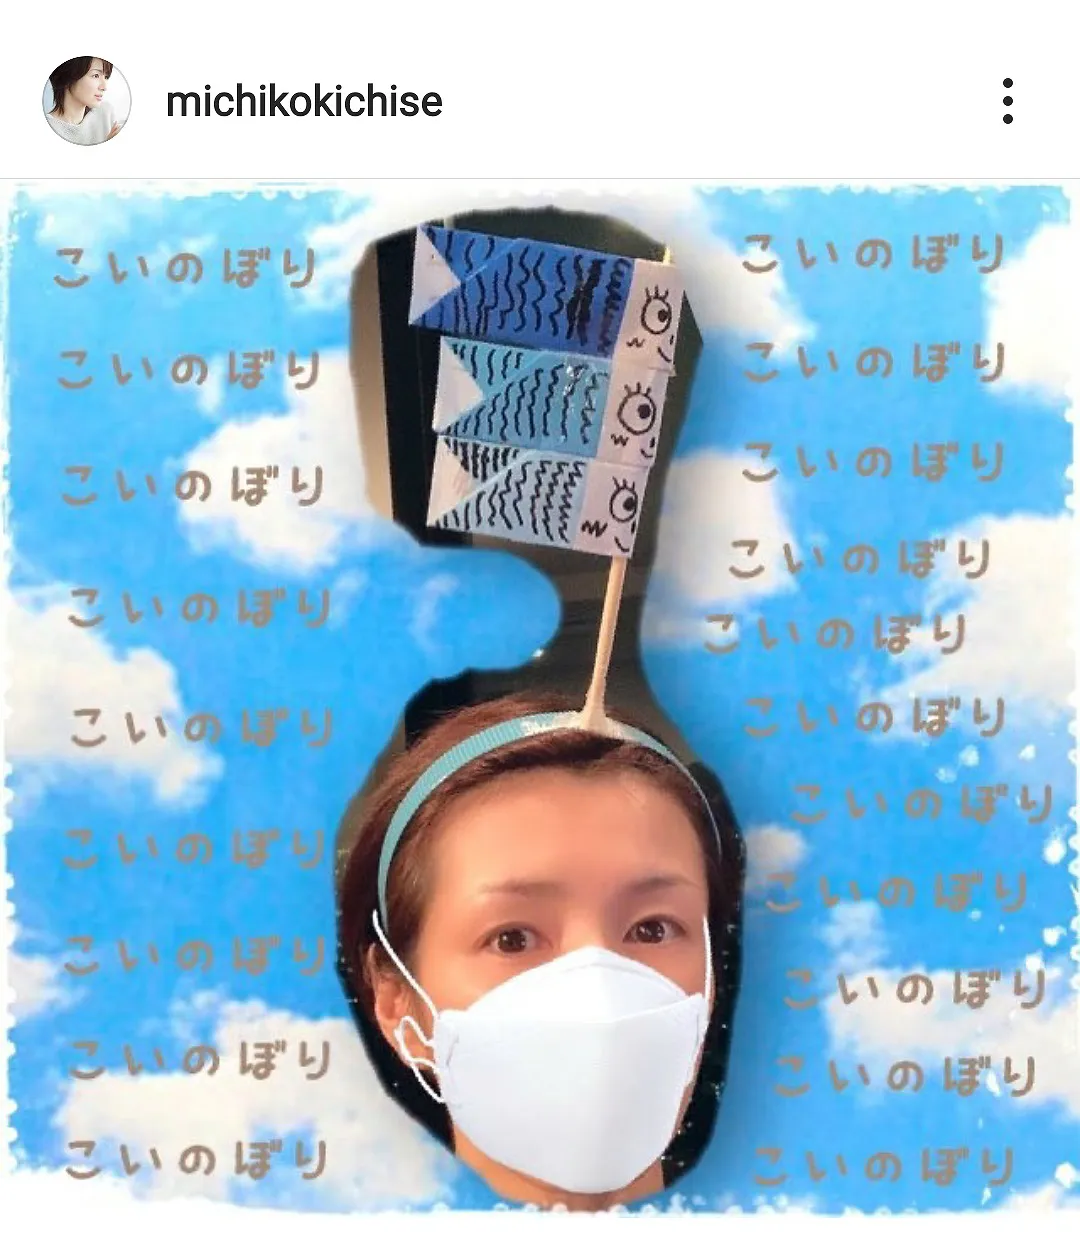 ※画像は吉瀬美智子(michikokichise)公式Instagramのスクリーンショット